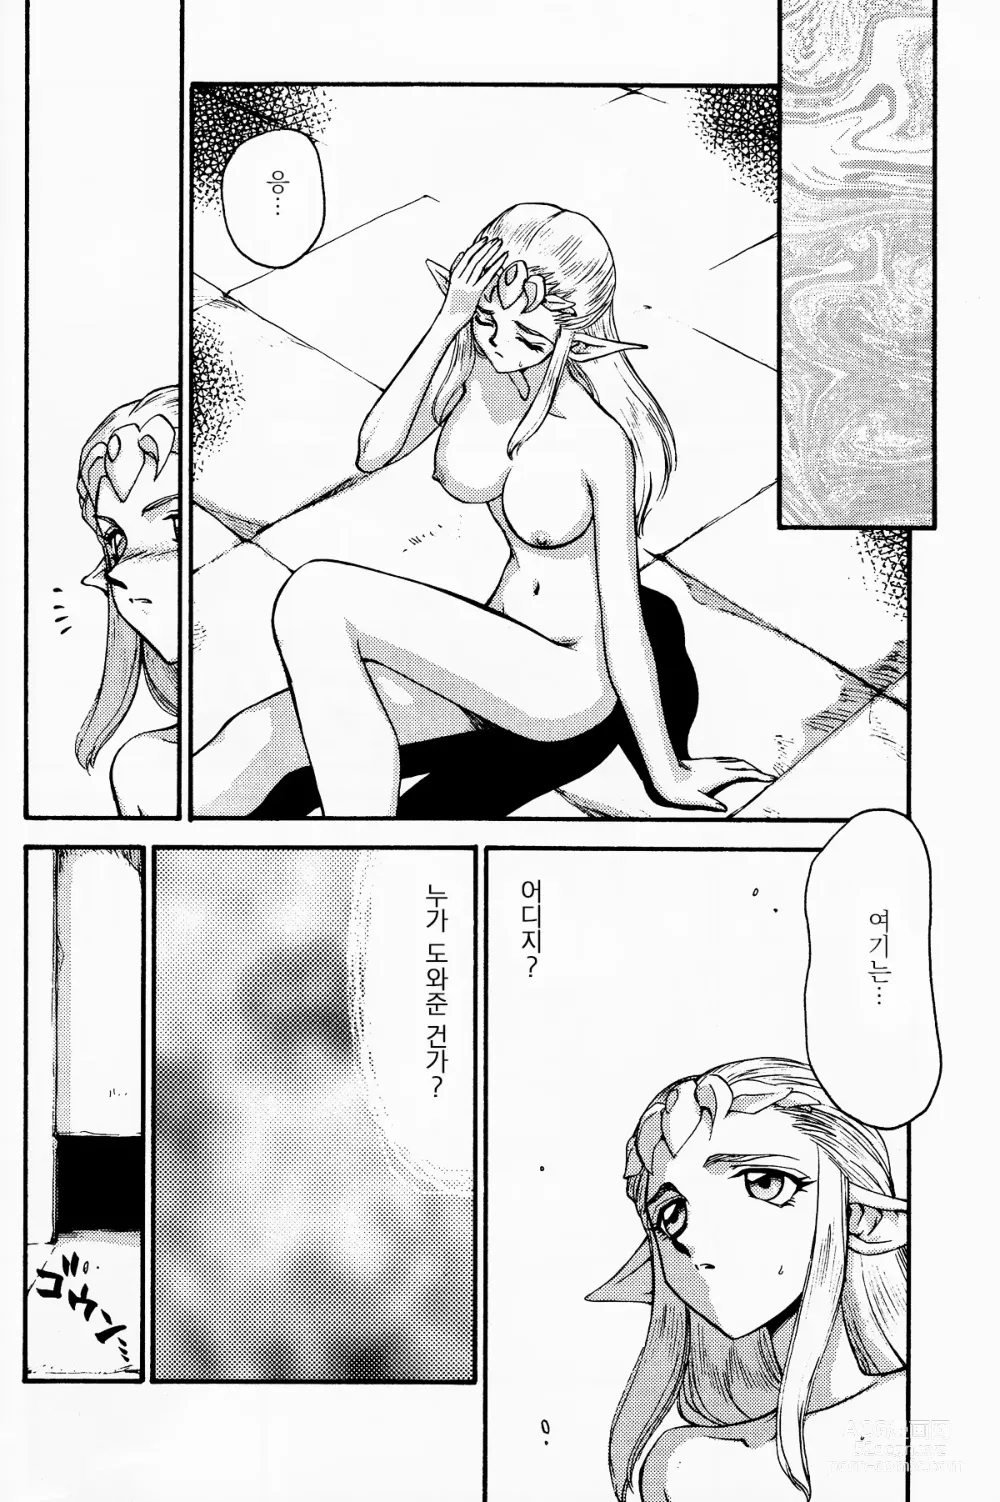 Page 9 of doujinshi NISE Zelda no Densetsu Shinshou